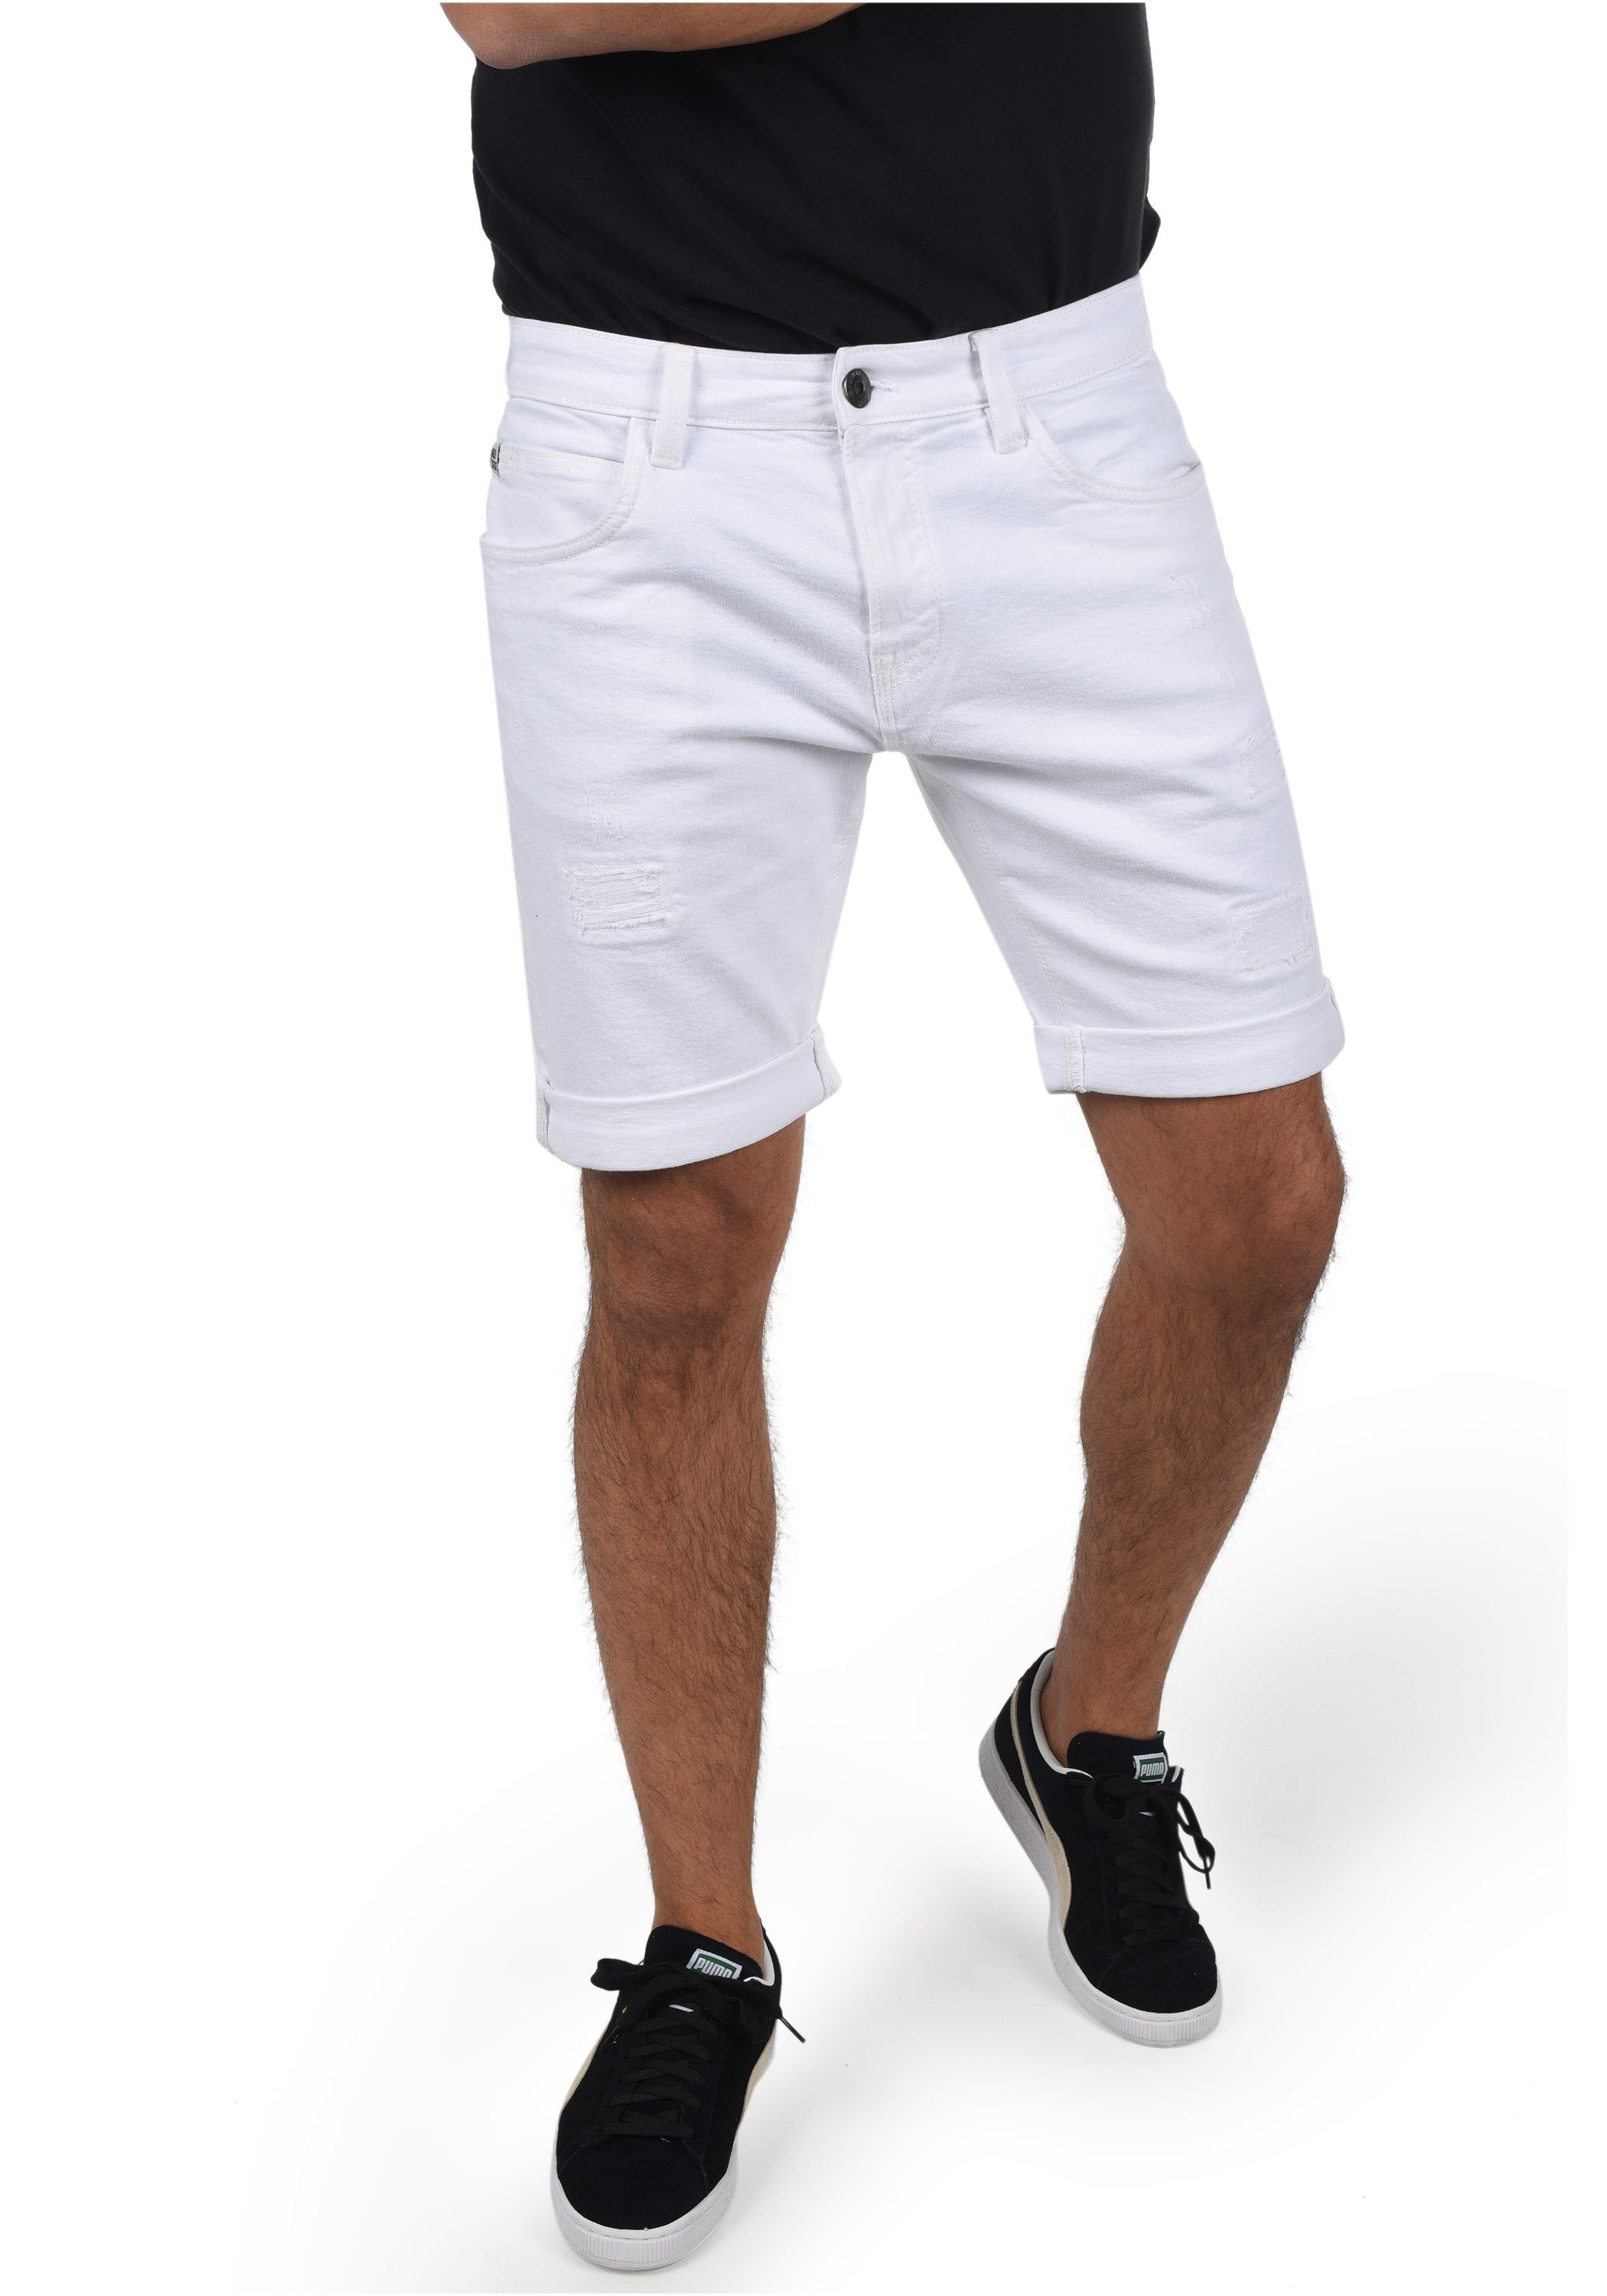 Weiße Herren Jeans Shorts online kaufen | OTTO